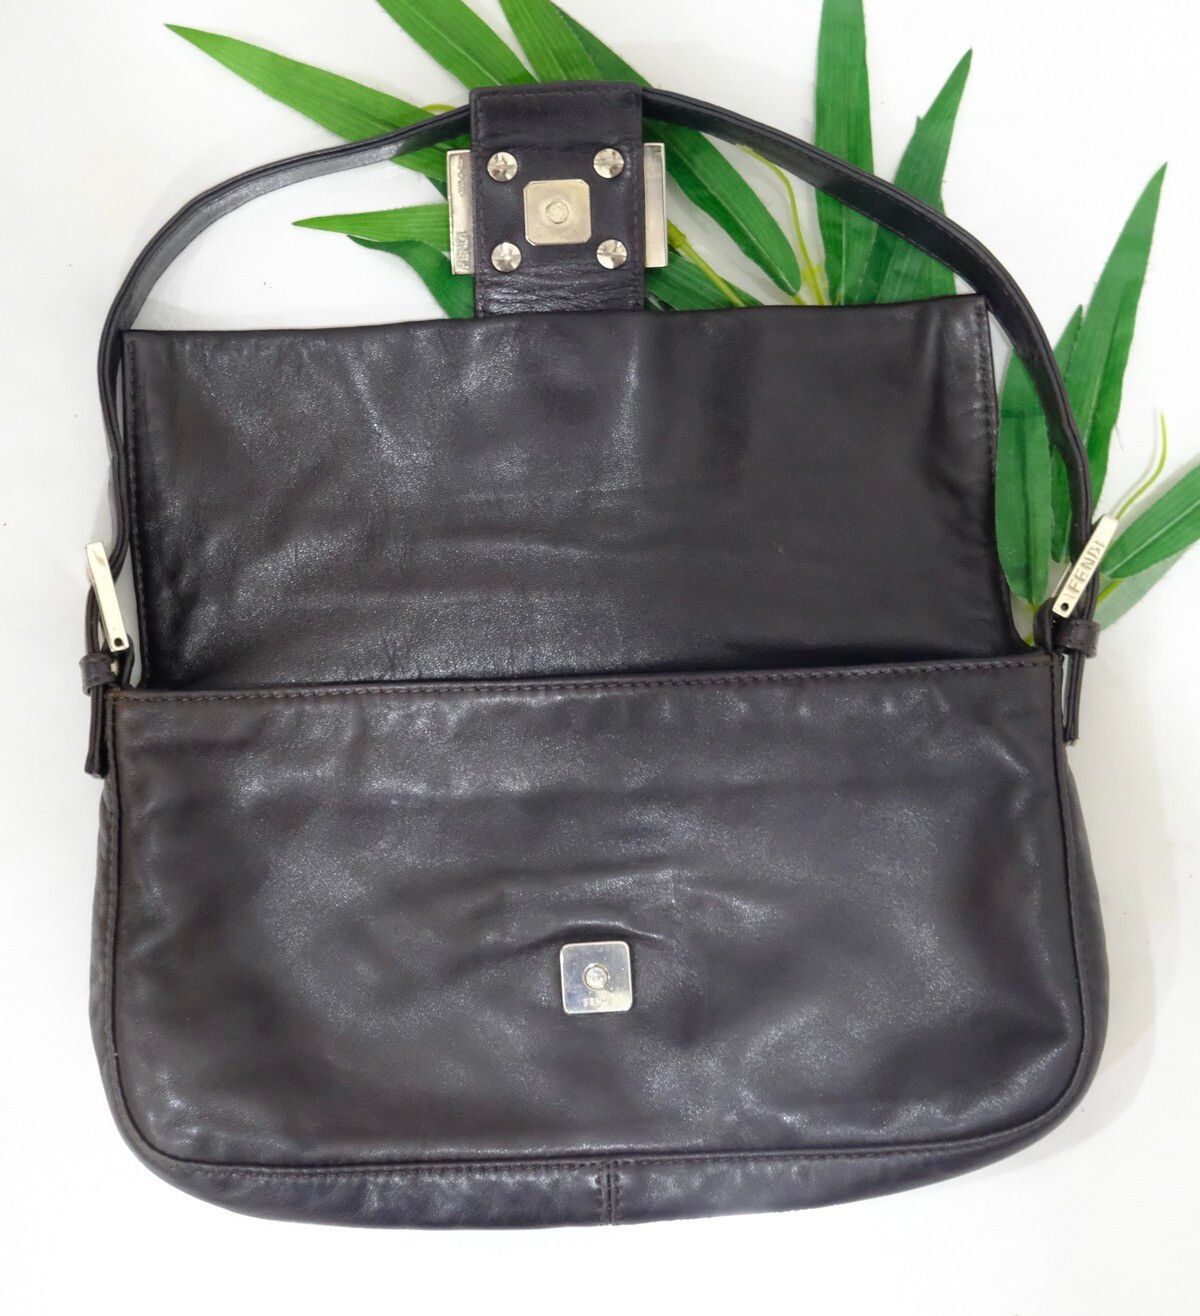 Authentic vintage FENDI BAGUETTE brown leather handbag - 16